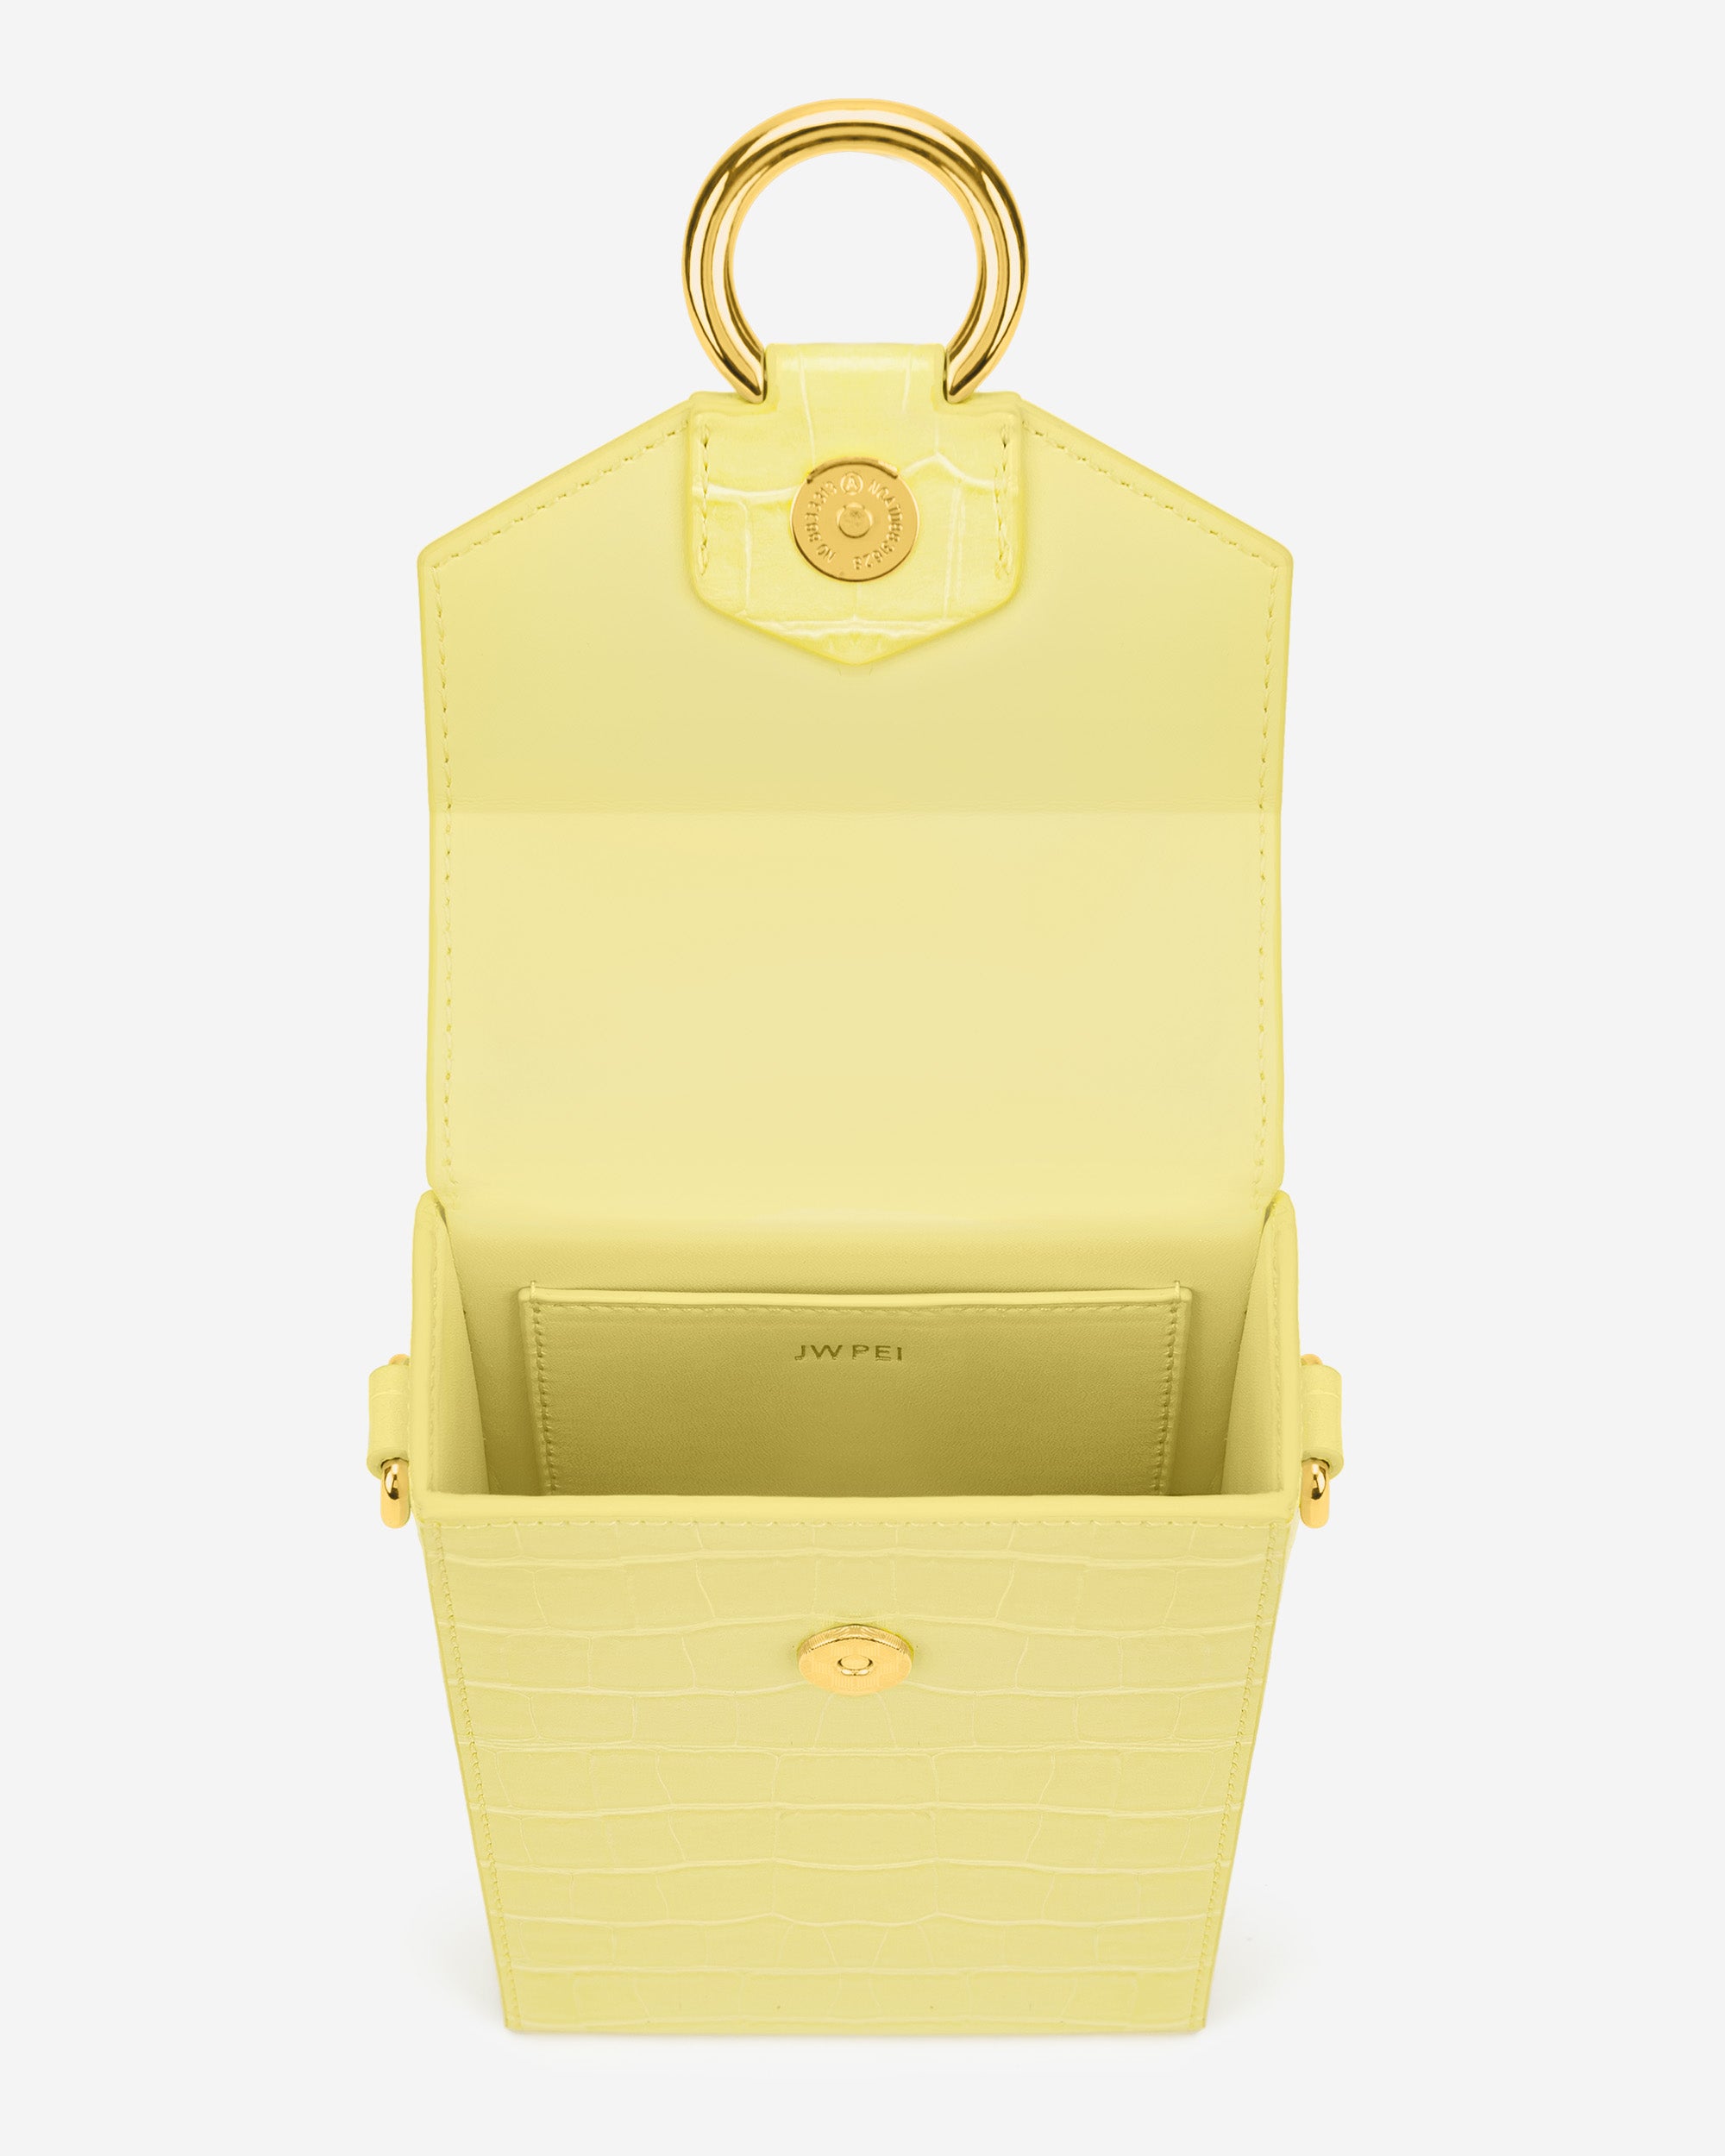 lola 체인 핸드폰 가방 - 연 노랑 악어 무늬